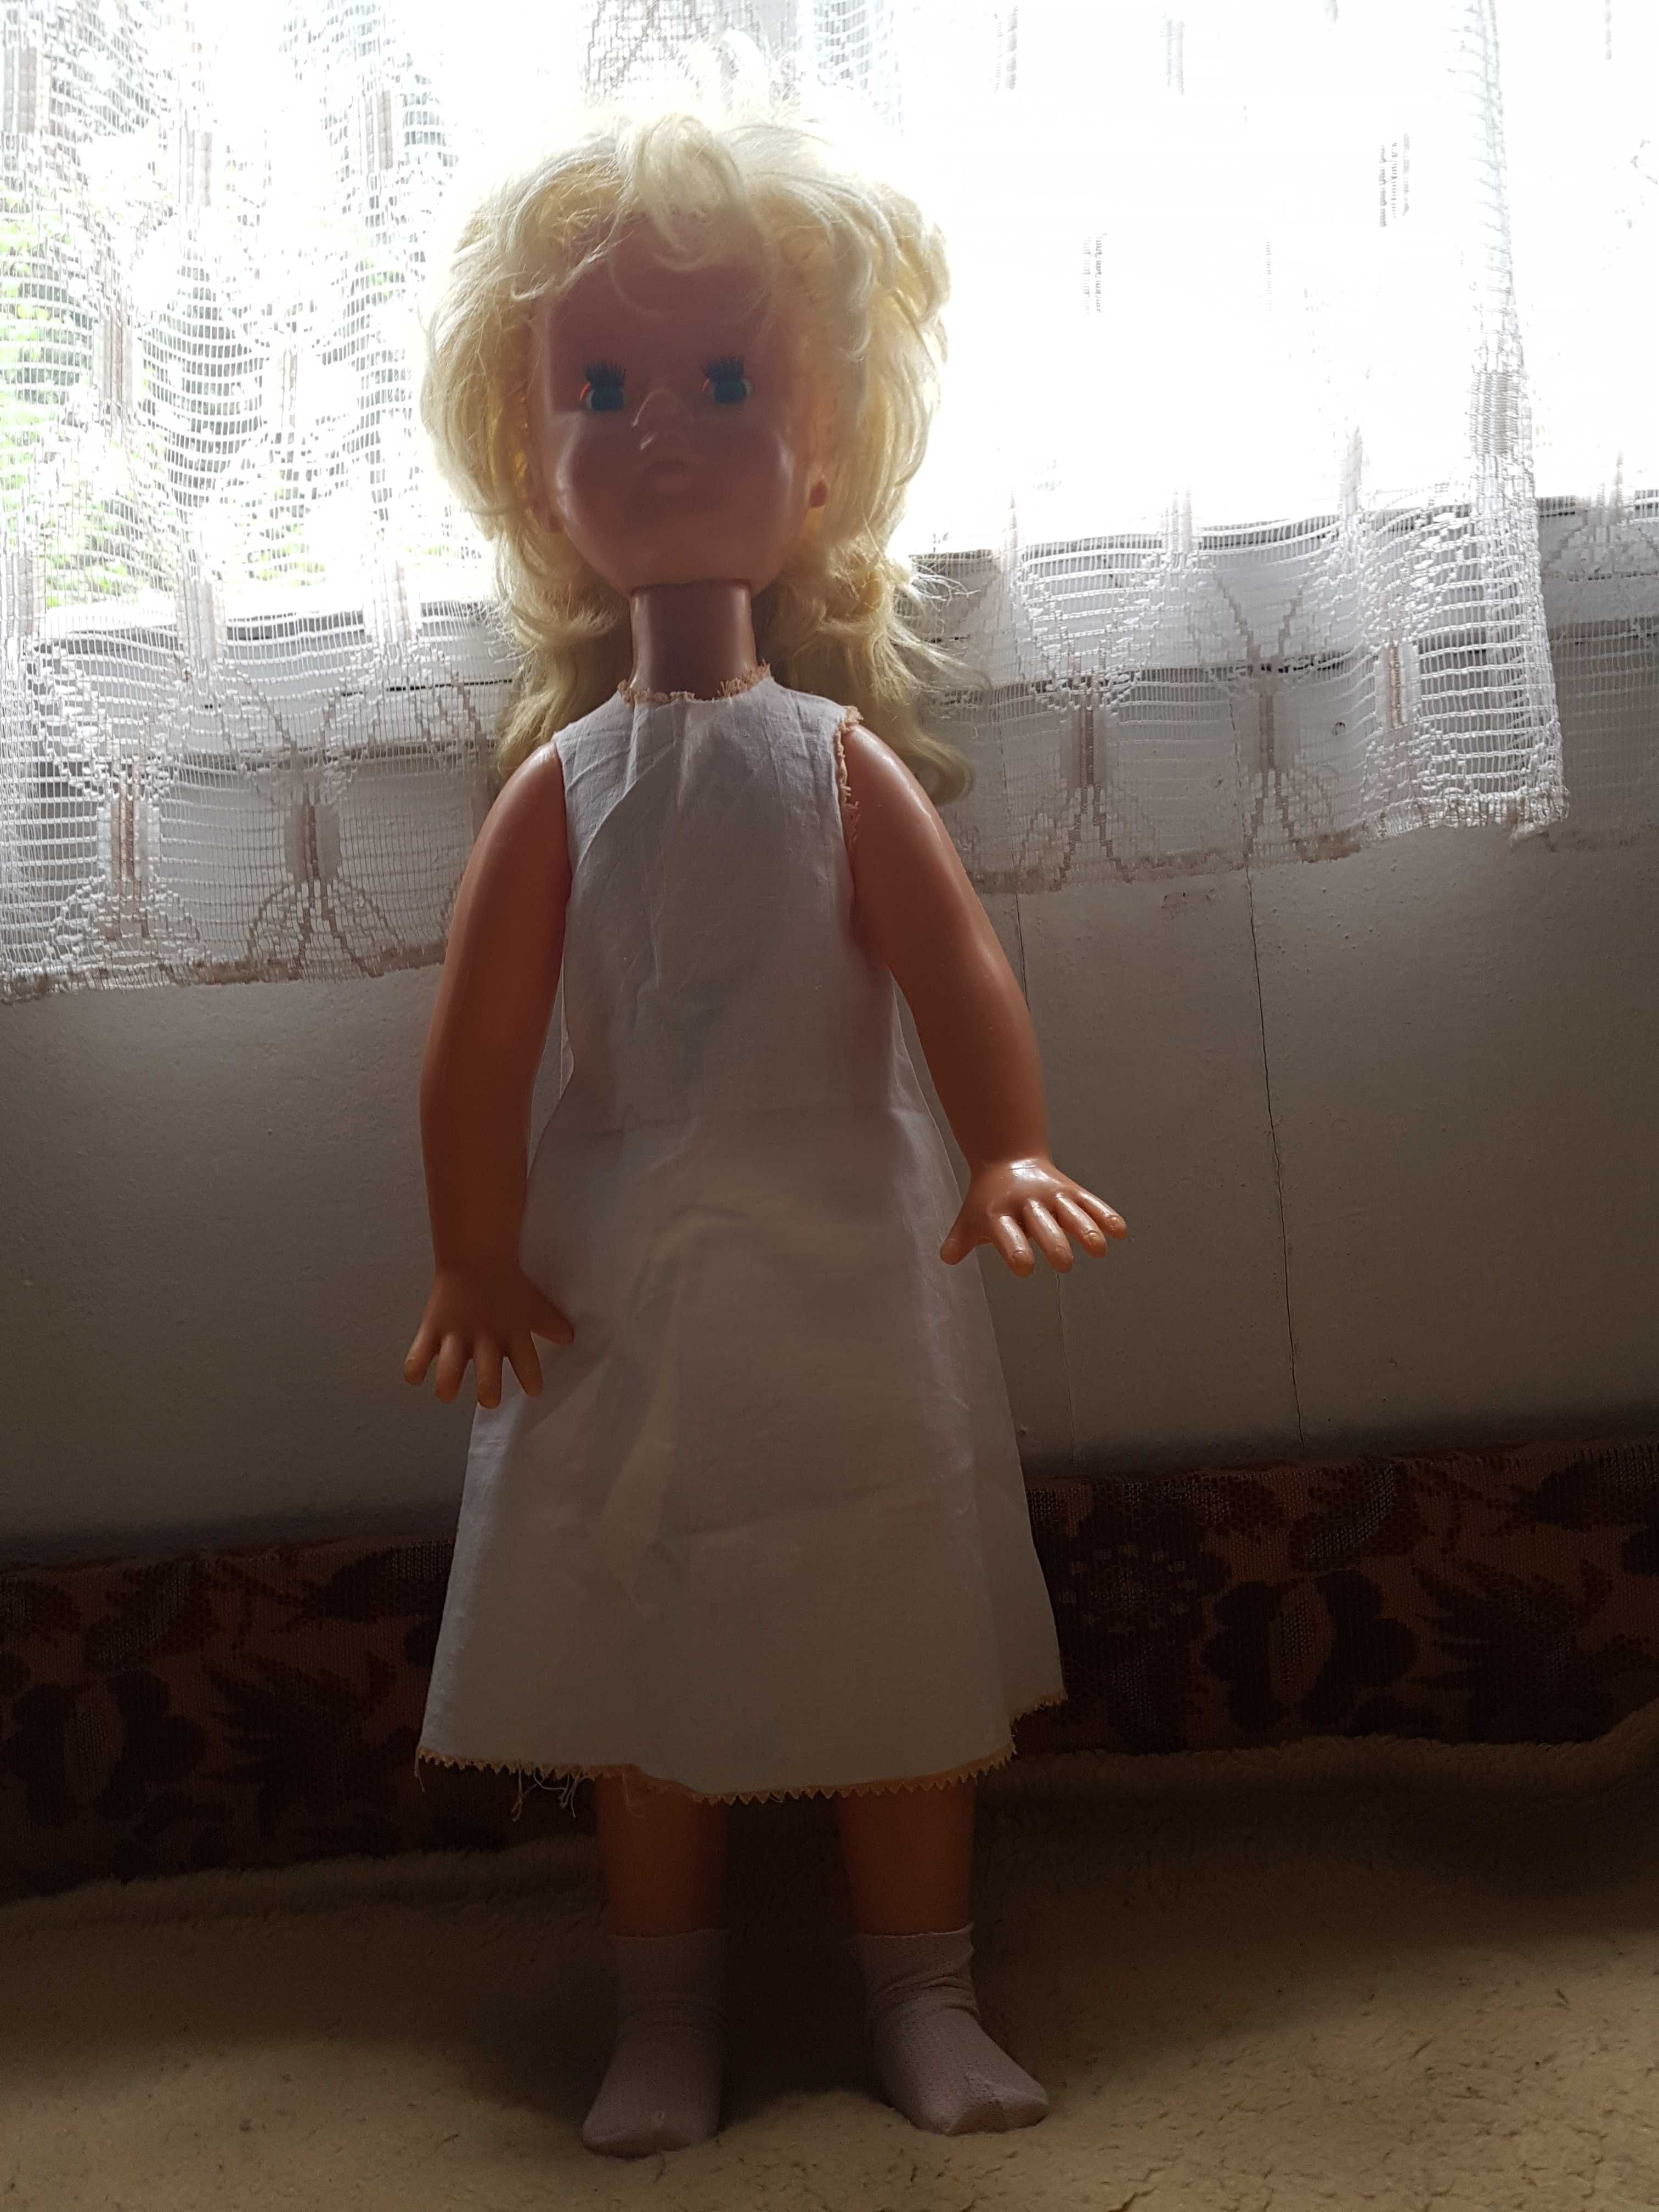 Duża blond piękność lalka z PRLu, 70 cm